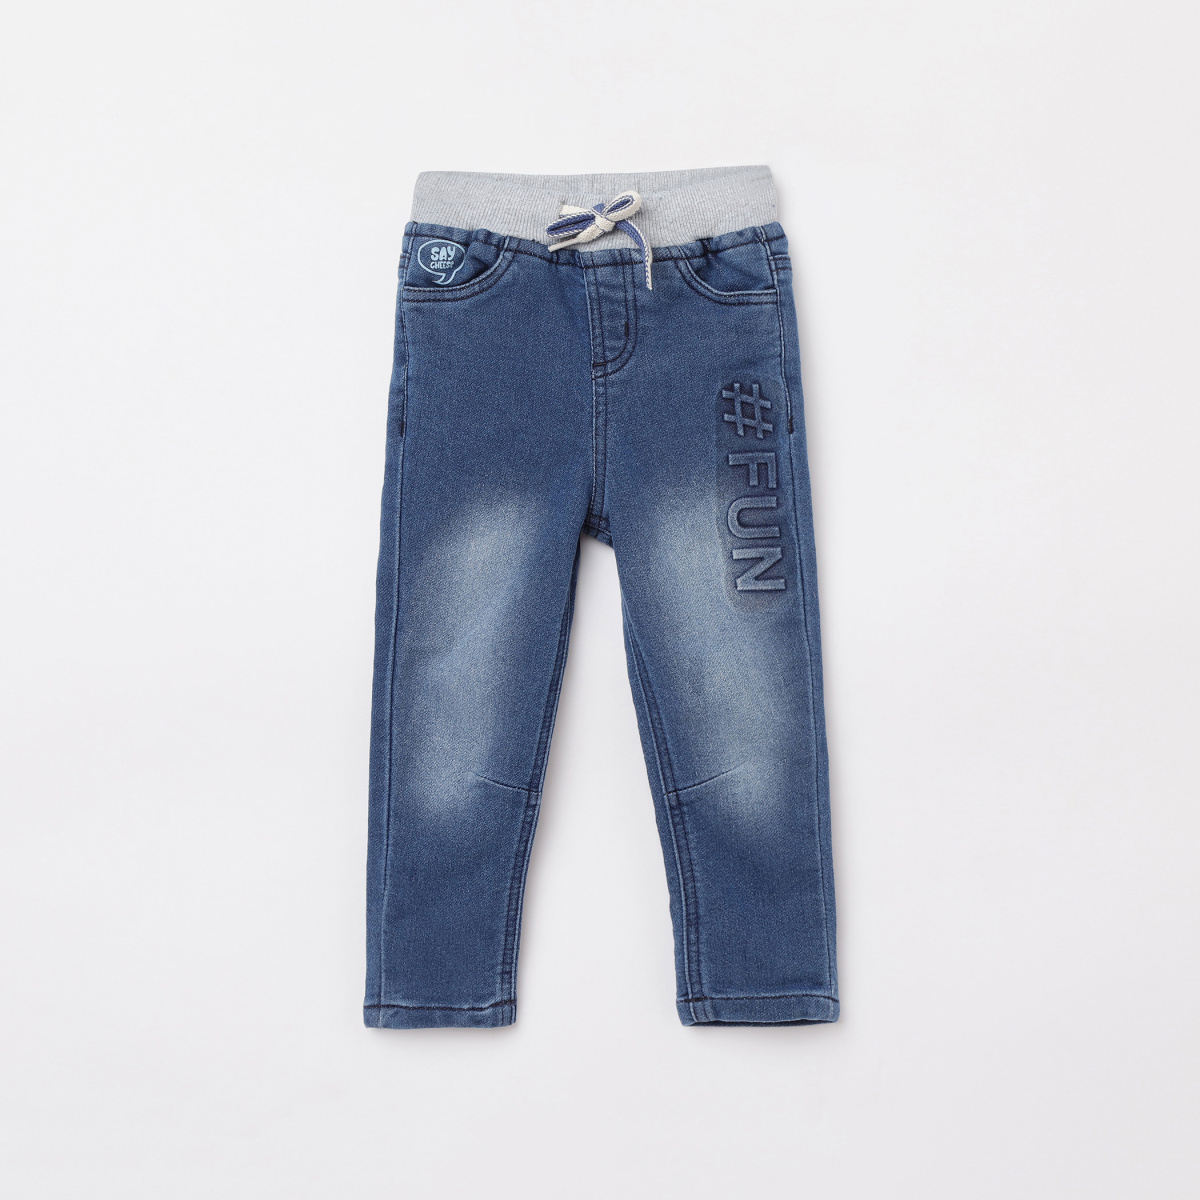 JUNIORS Boys Printed Slim Fit Jeans